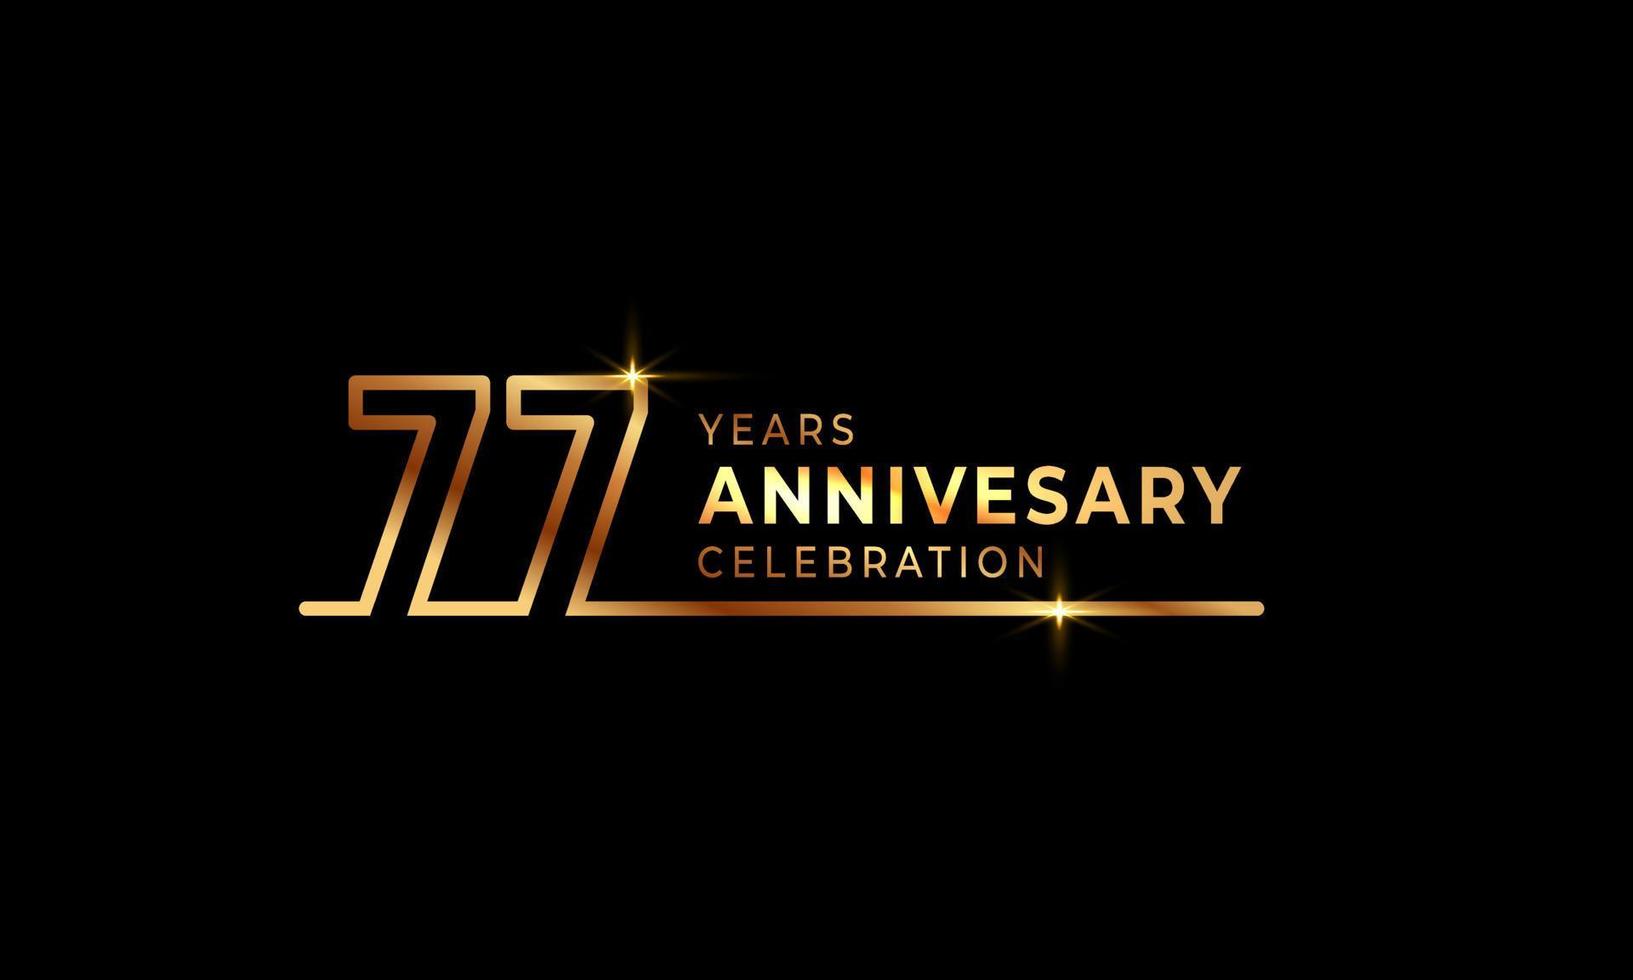 77-jarig jubileumviering logo met gouden gekleurde lettertypenummers gemaakt van één verbonden lijn voor feestgebeurtenis, bruiloft, wenskaart en uitnodiging geïsoleerd op donkere achtergrond vector